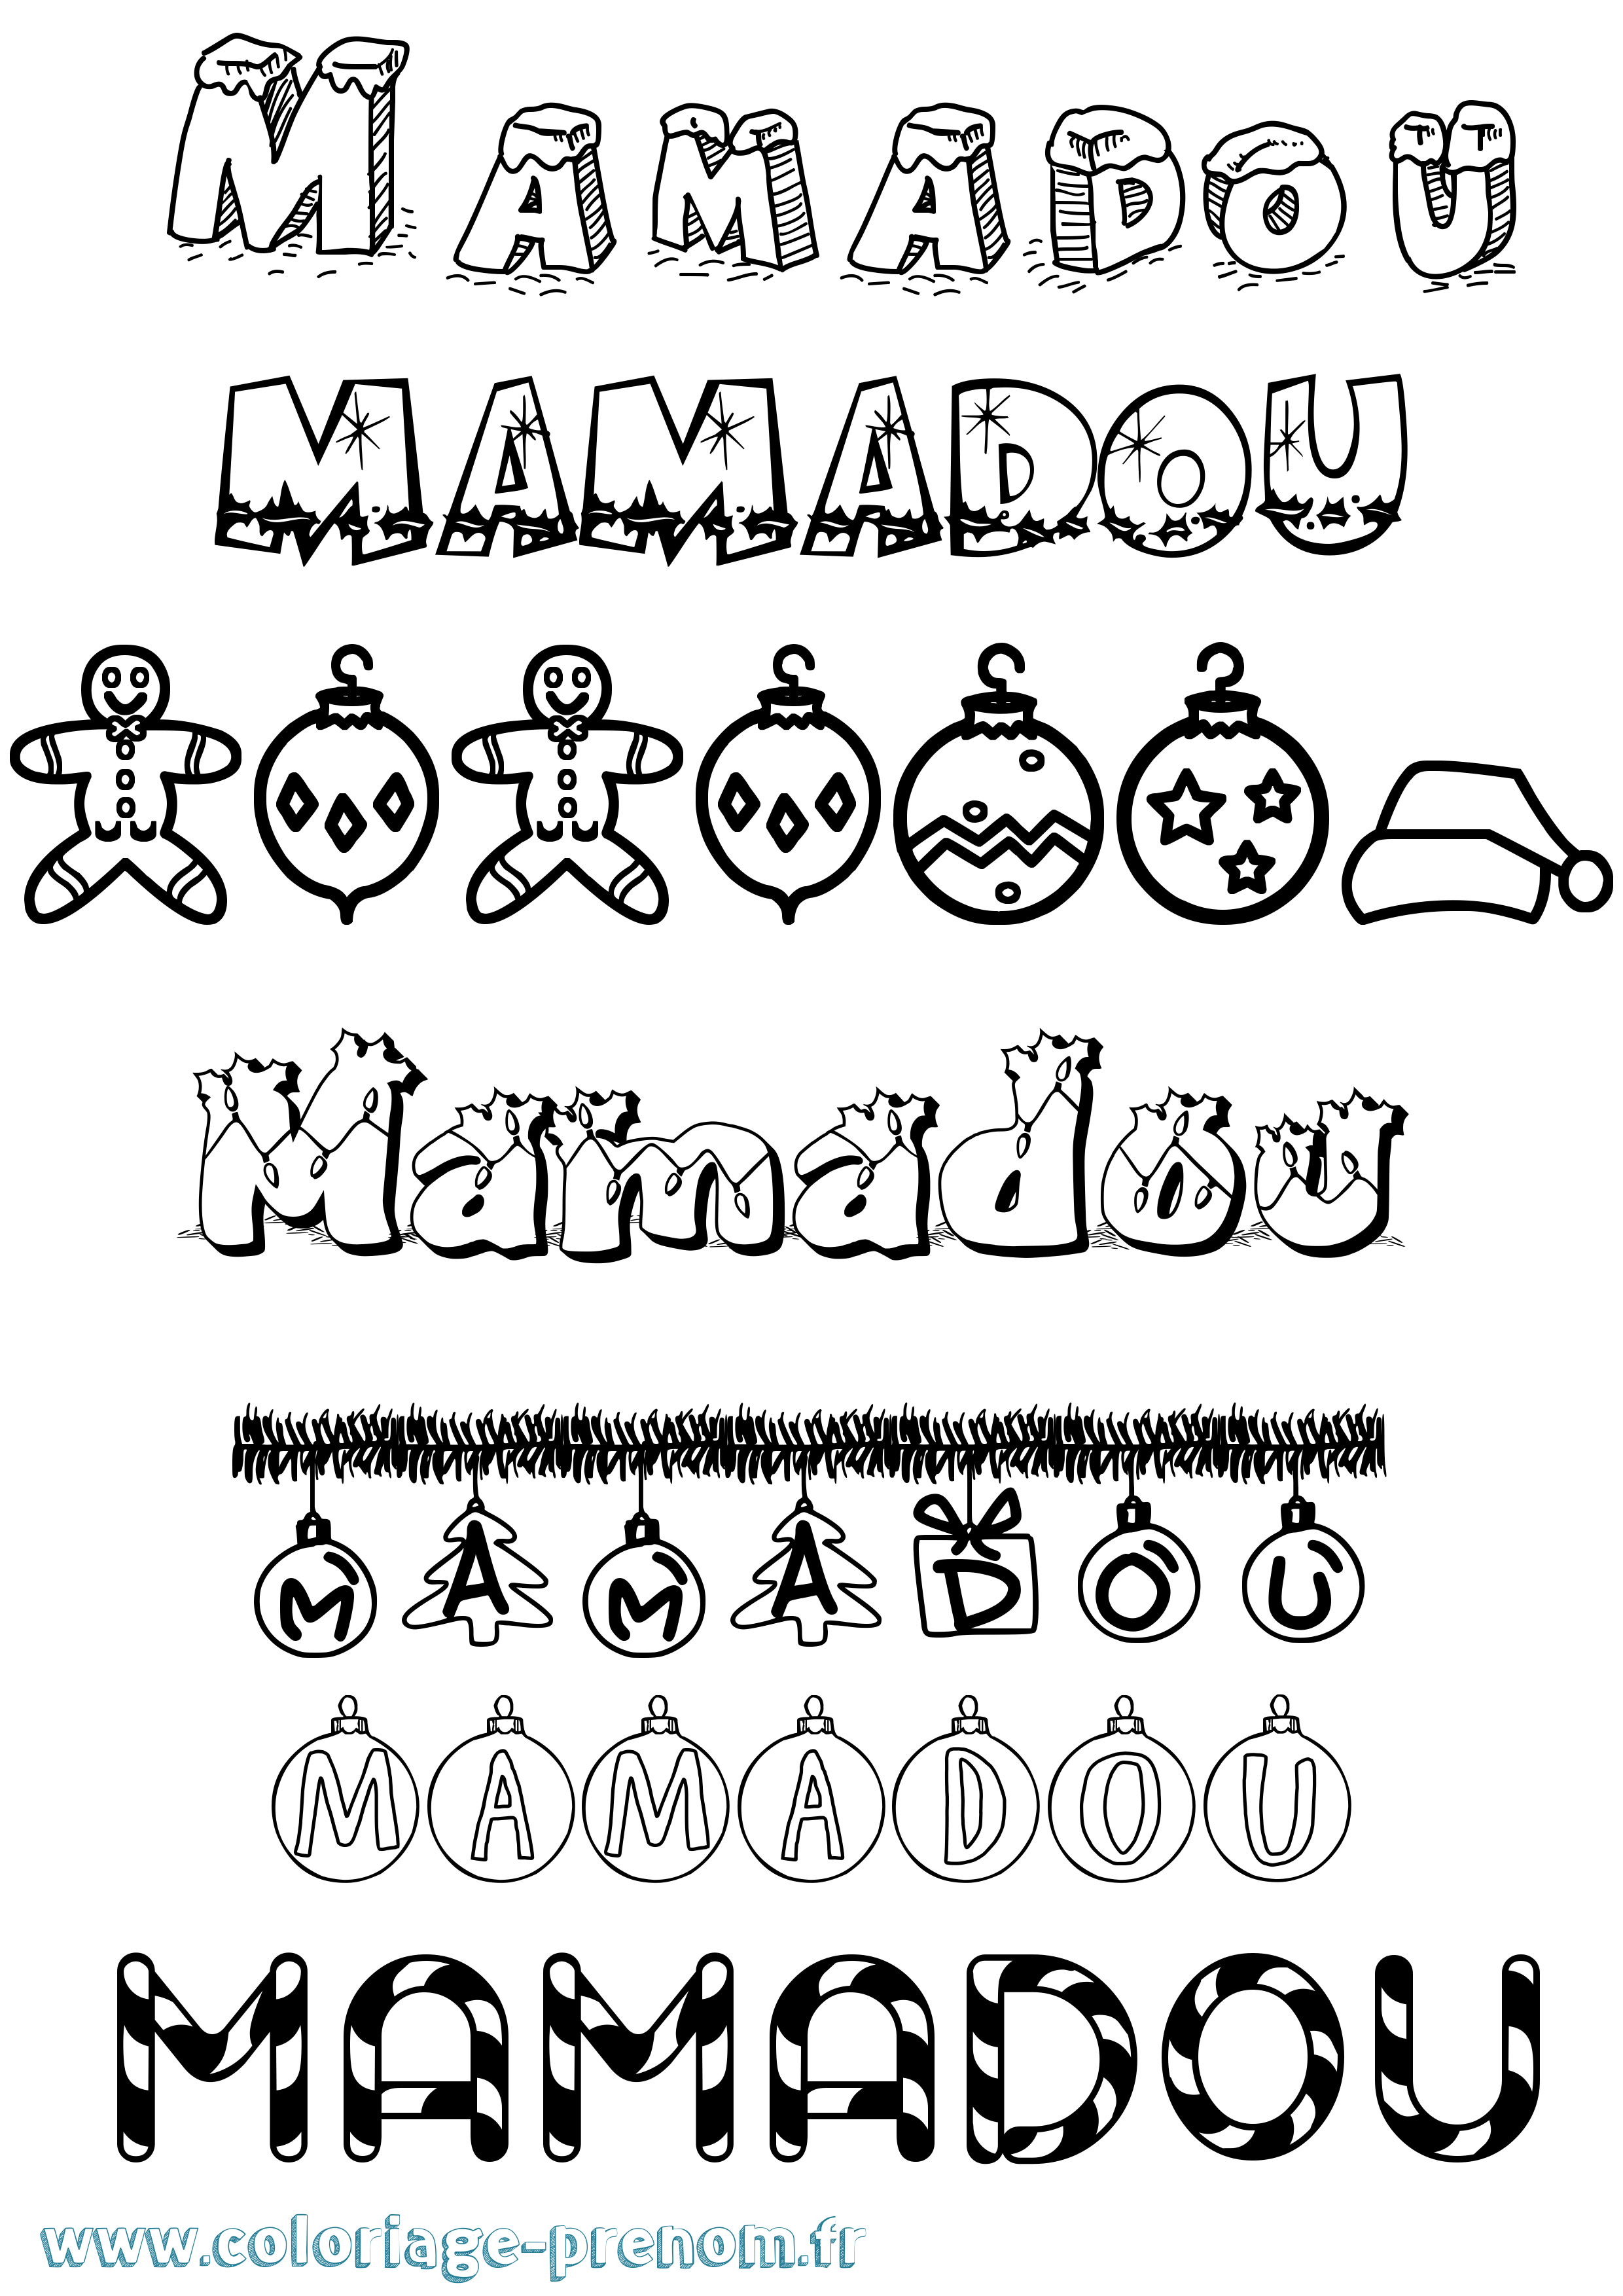 Coloriage prénom Mamadou